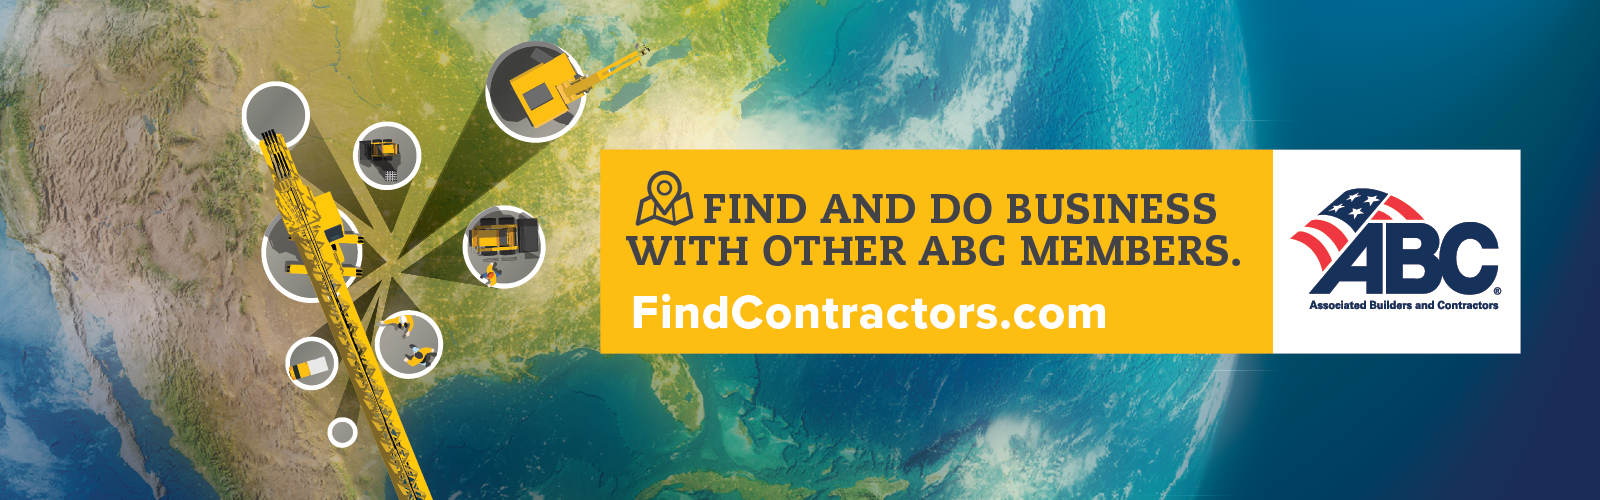 Find Contractors Banner